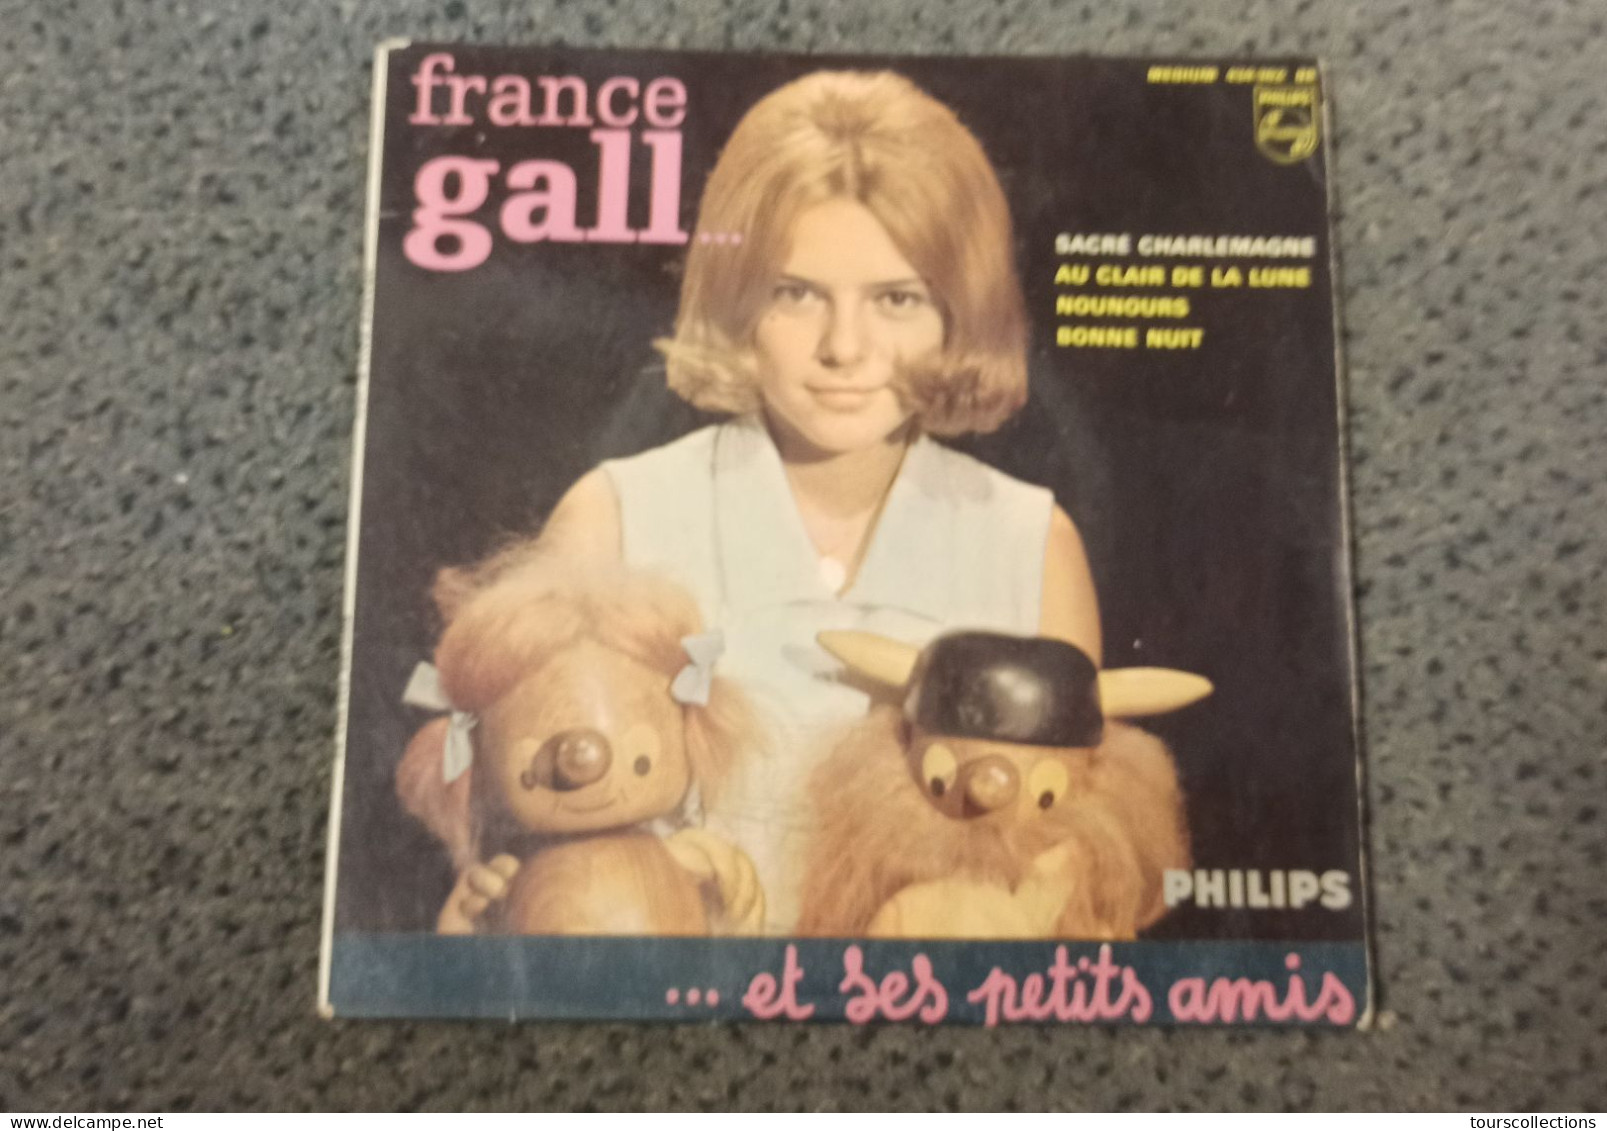 Vinyle 45 Tours 4 Titres FRANCE GALL Et Ses Petits Amis - SACRE CHARLEMAGNE Au Clair De La Lune Nounours Bonne Nuit - Children